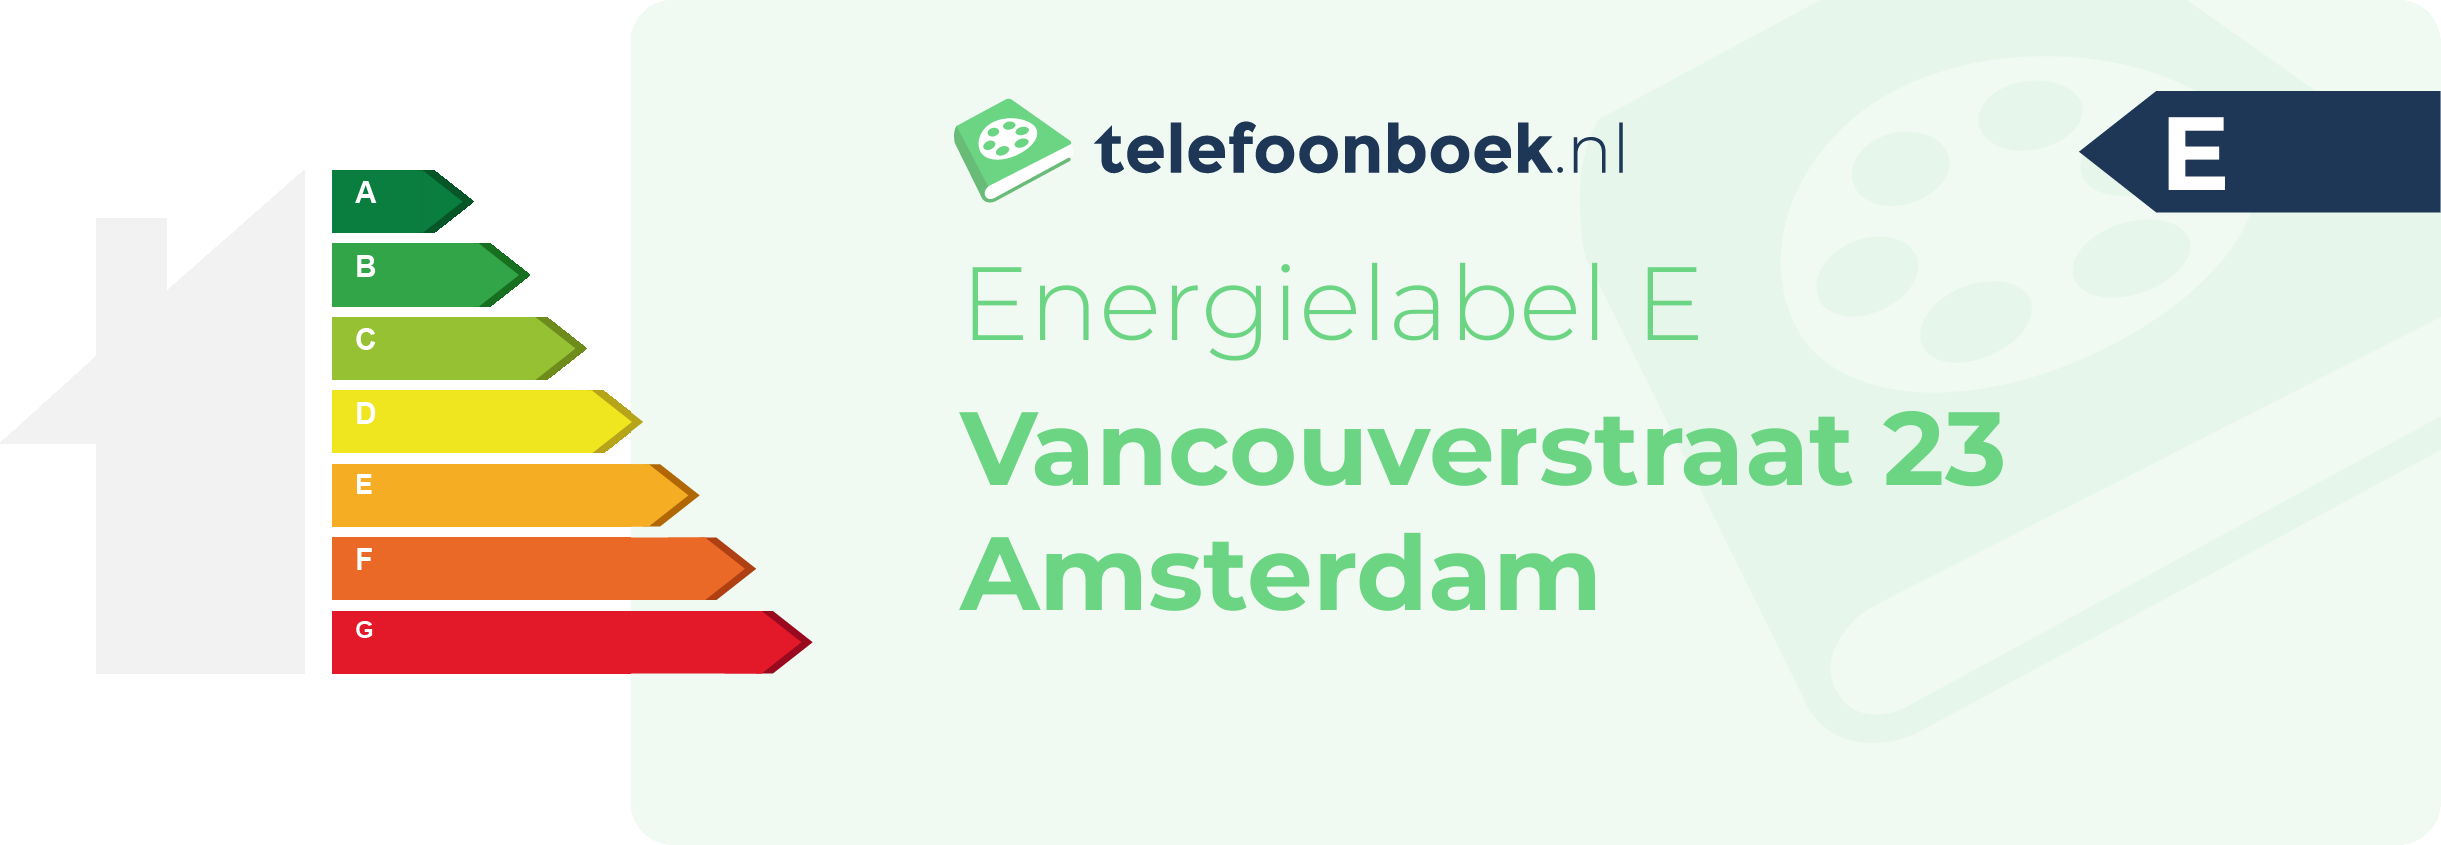 Energielabel Vancouverstraat 23 Amsterdam